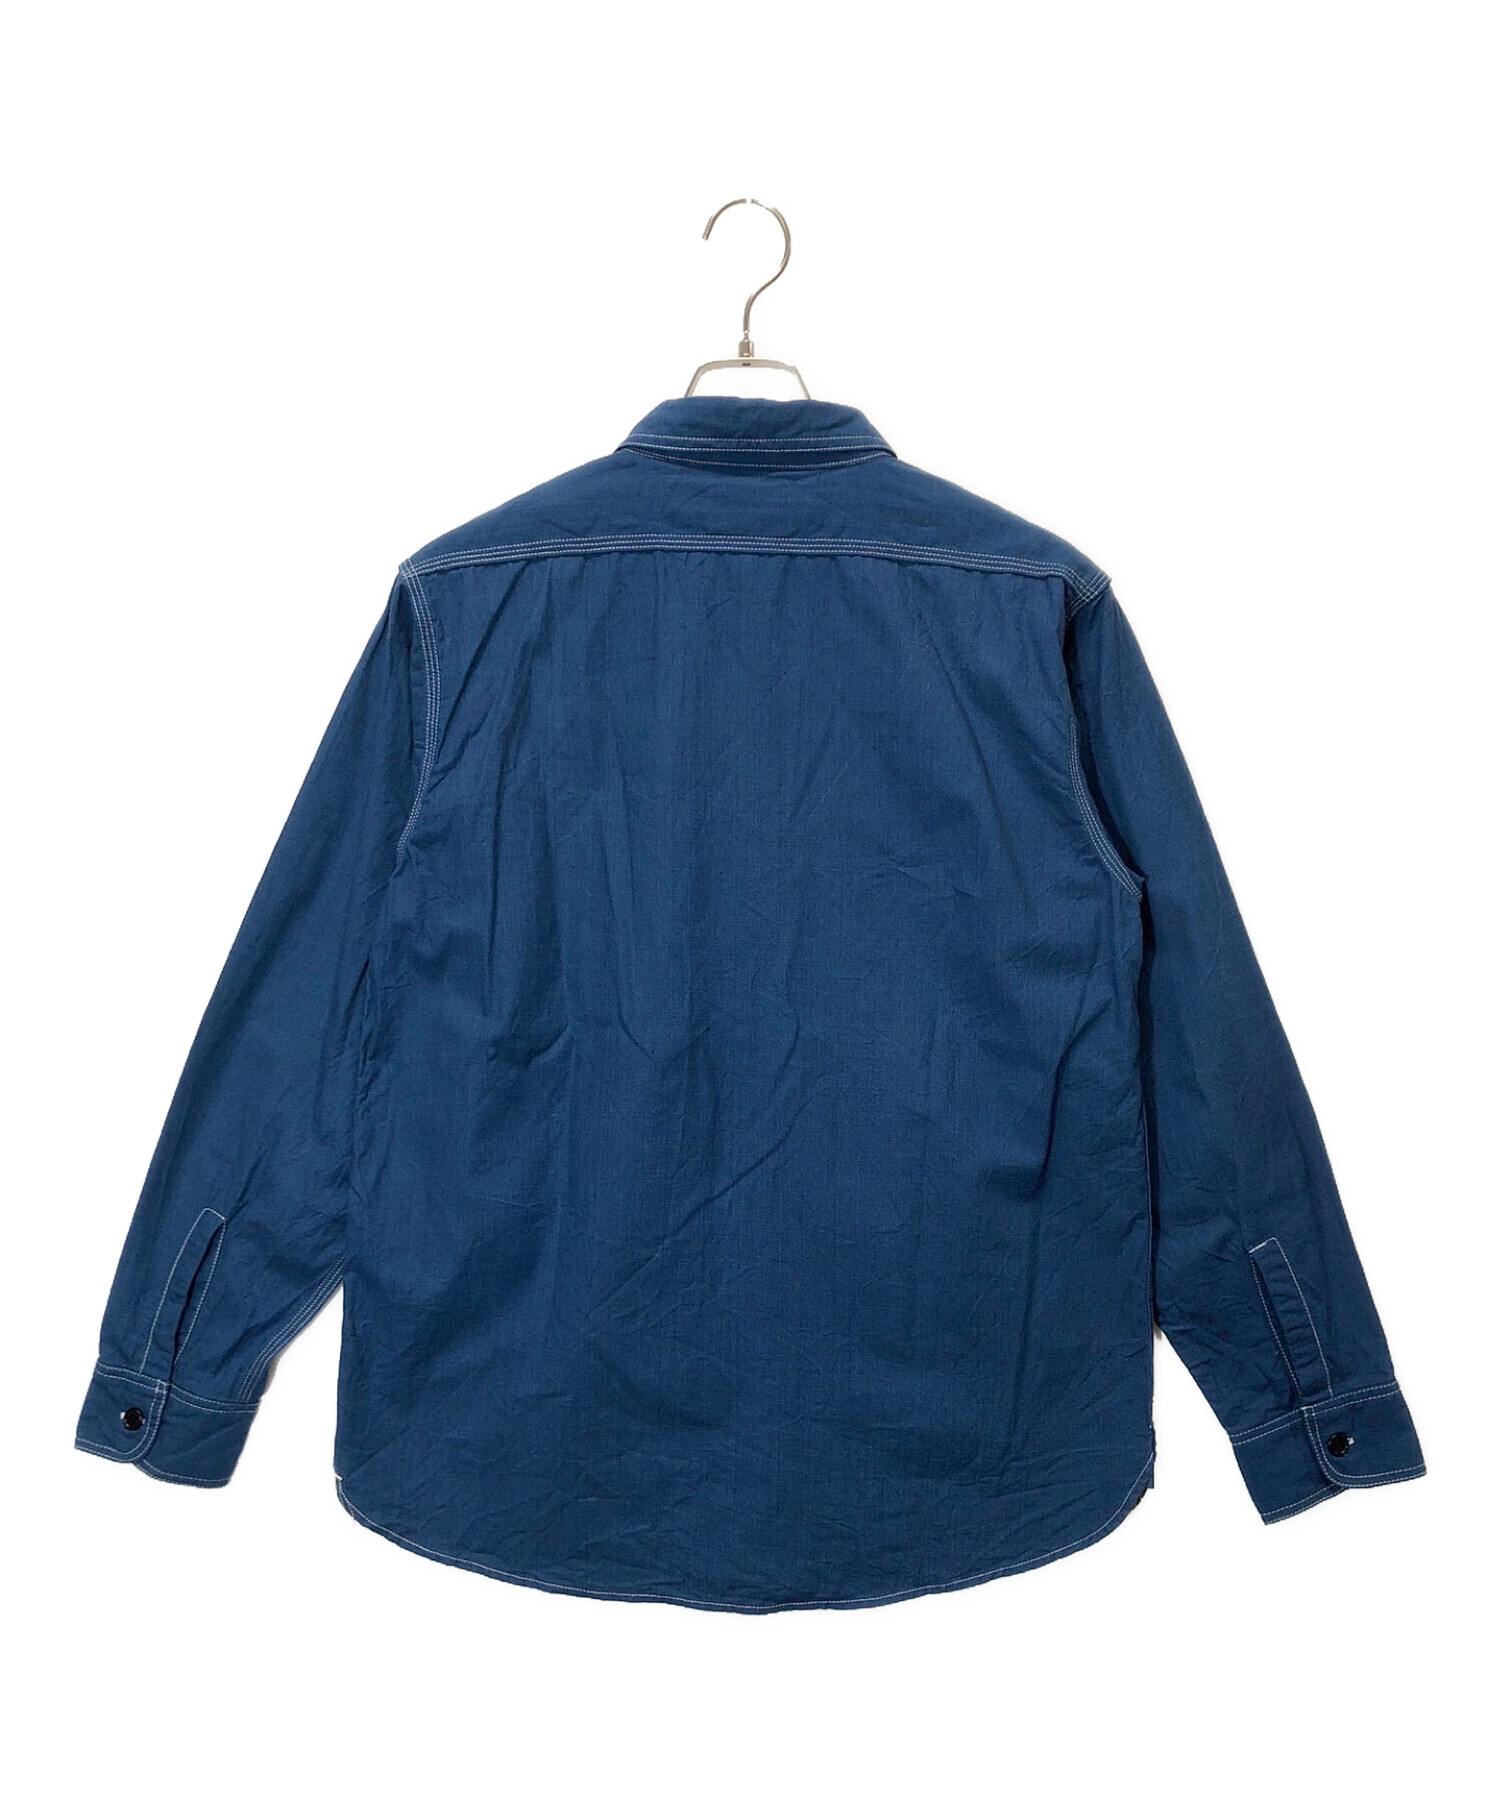 中古・古着通販】BONCOURA (ボンクラ) USNワークシャツ ブルー サイズ 